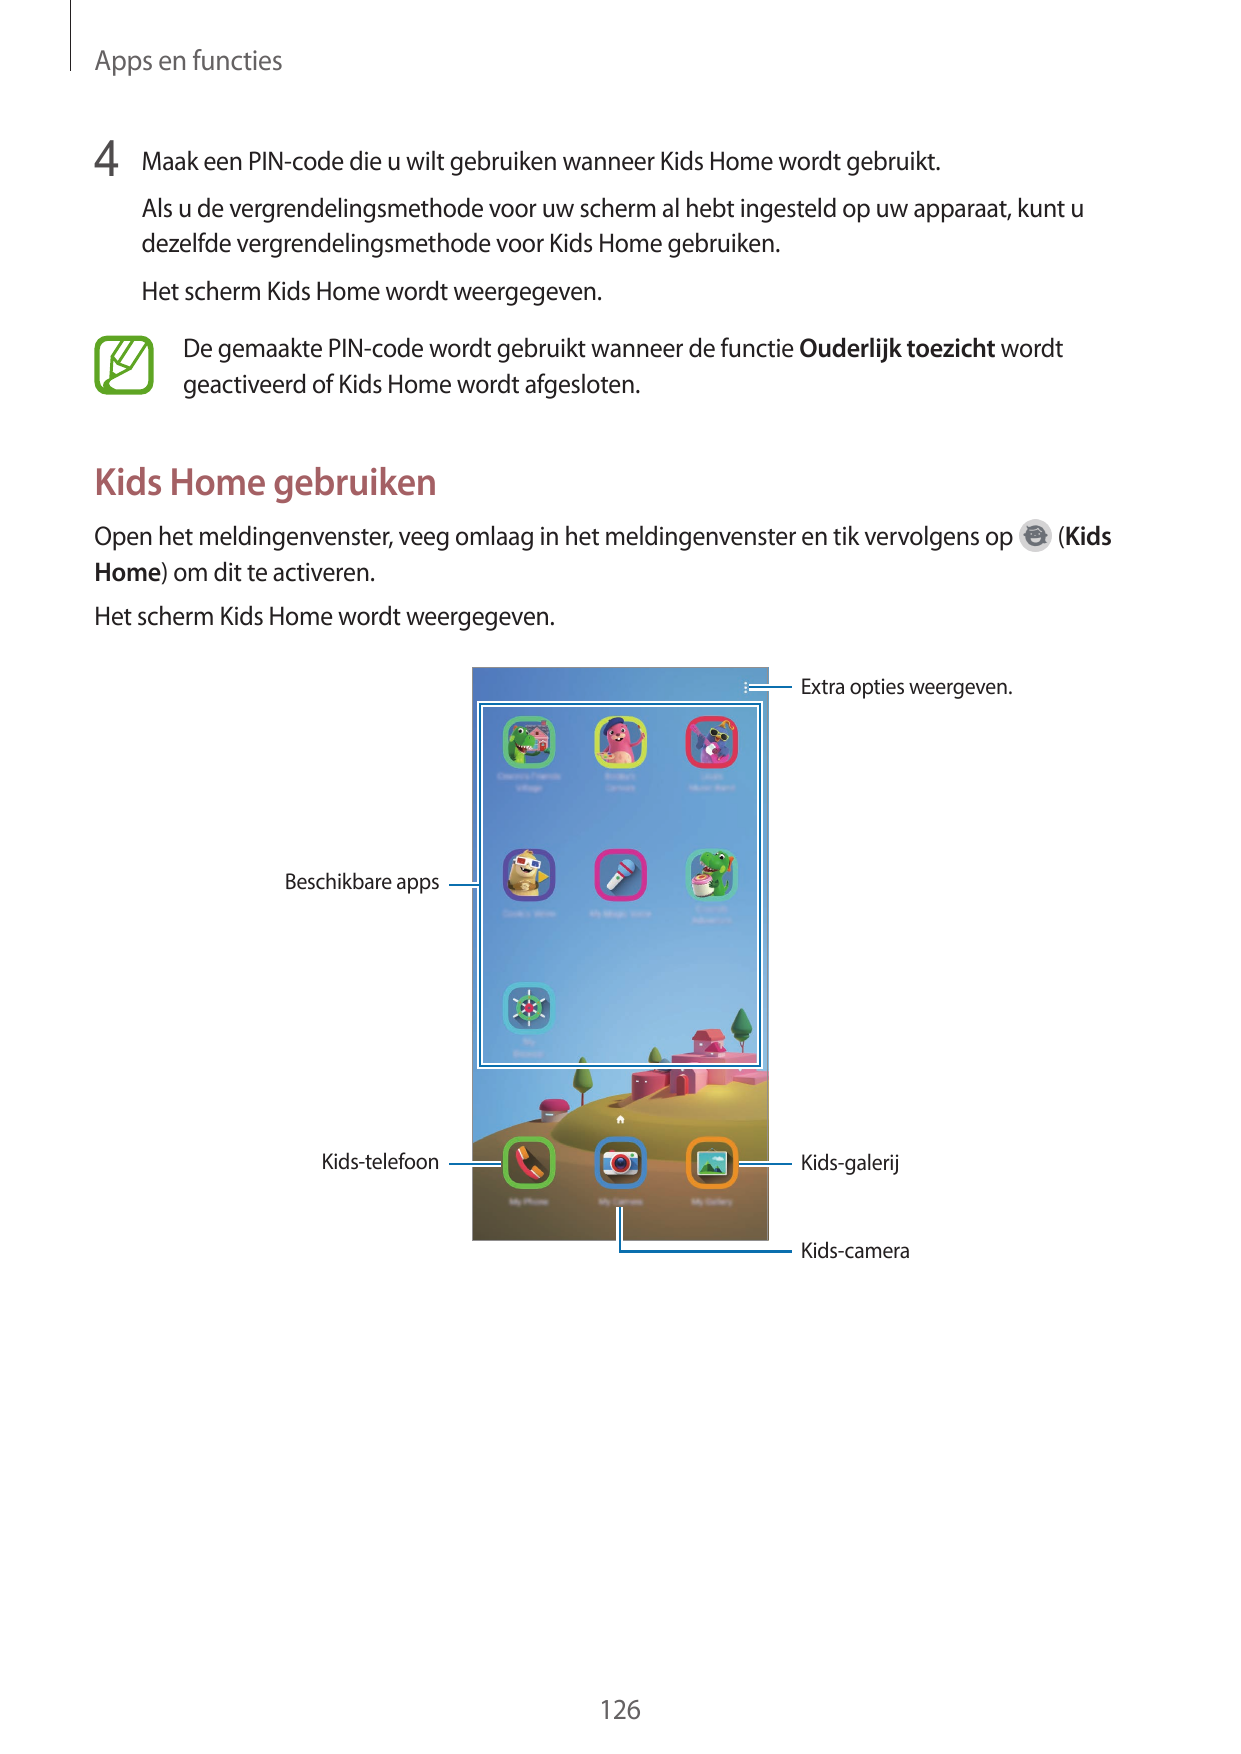 Apps en functies4 Maak een PIN-code die u wilt gebruiken wanneer Kids Home wordt gebruikt.Als u de vergrendelingsmethode voor uw